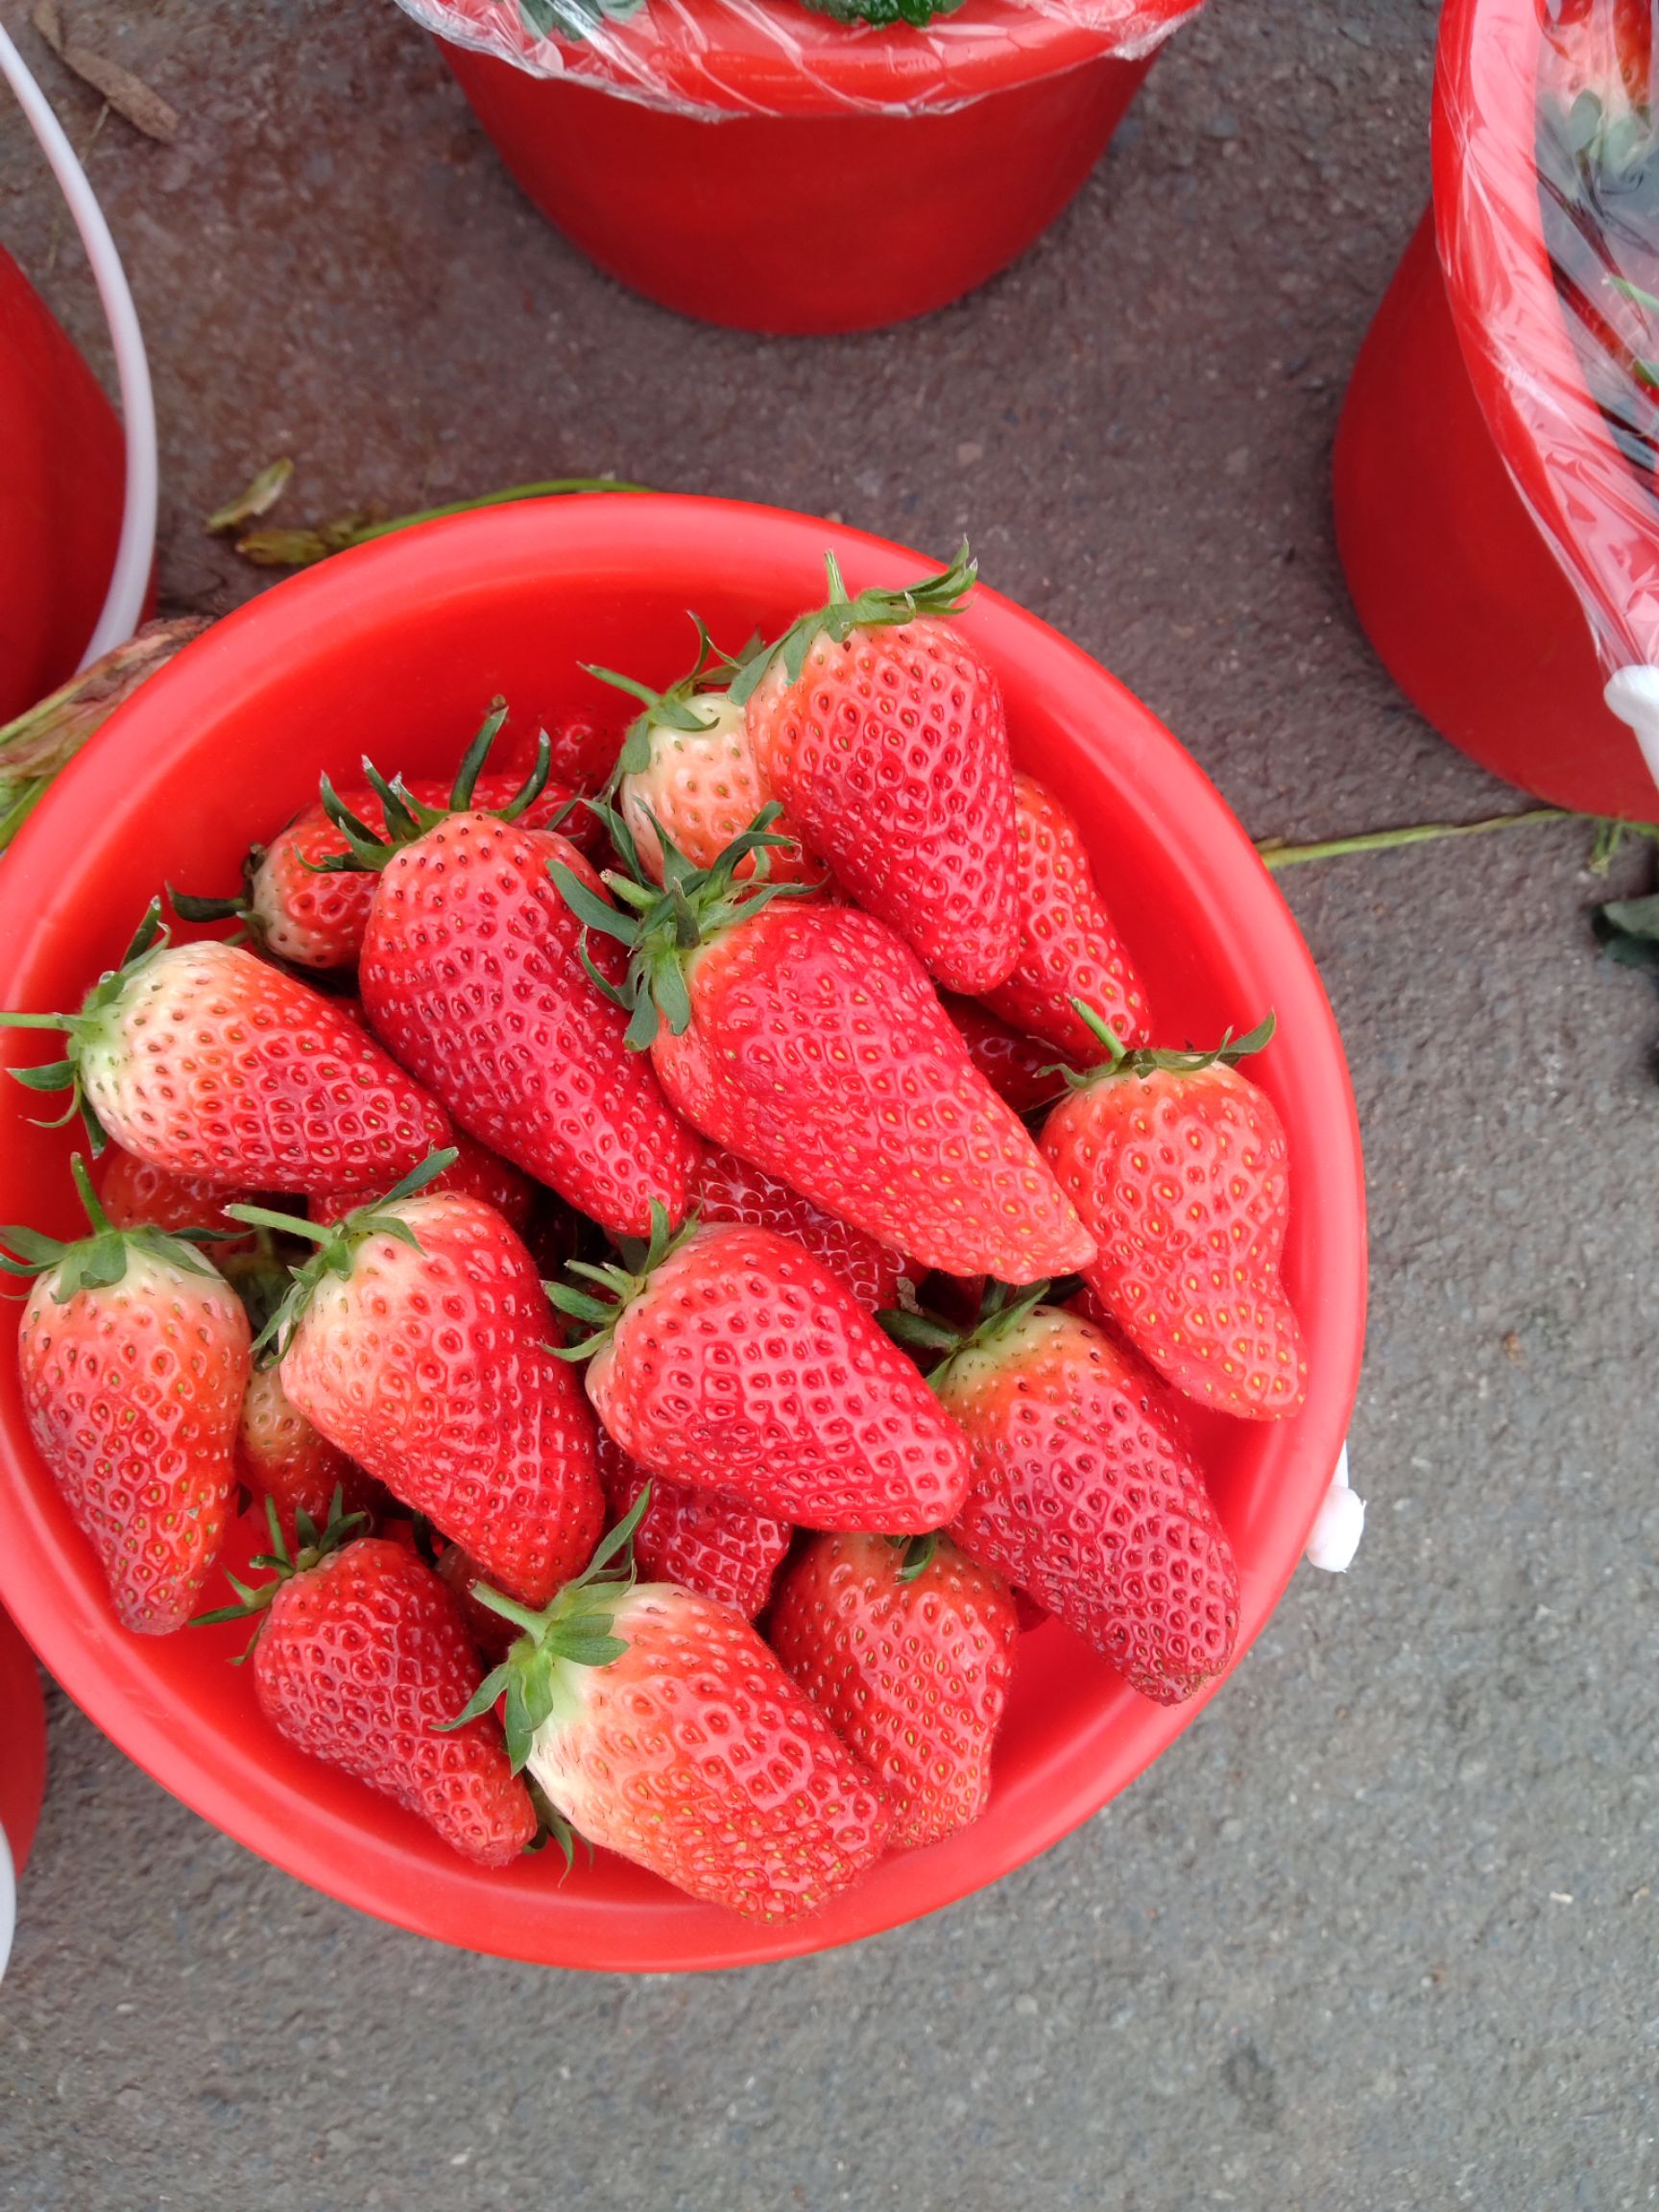 山东潍坊安丘市 安丘奶莓草莓甜宝九九草莓 甜度高 新鲜采摘质优